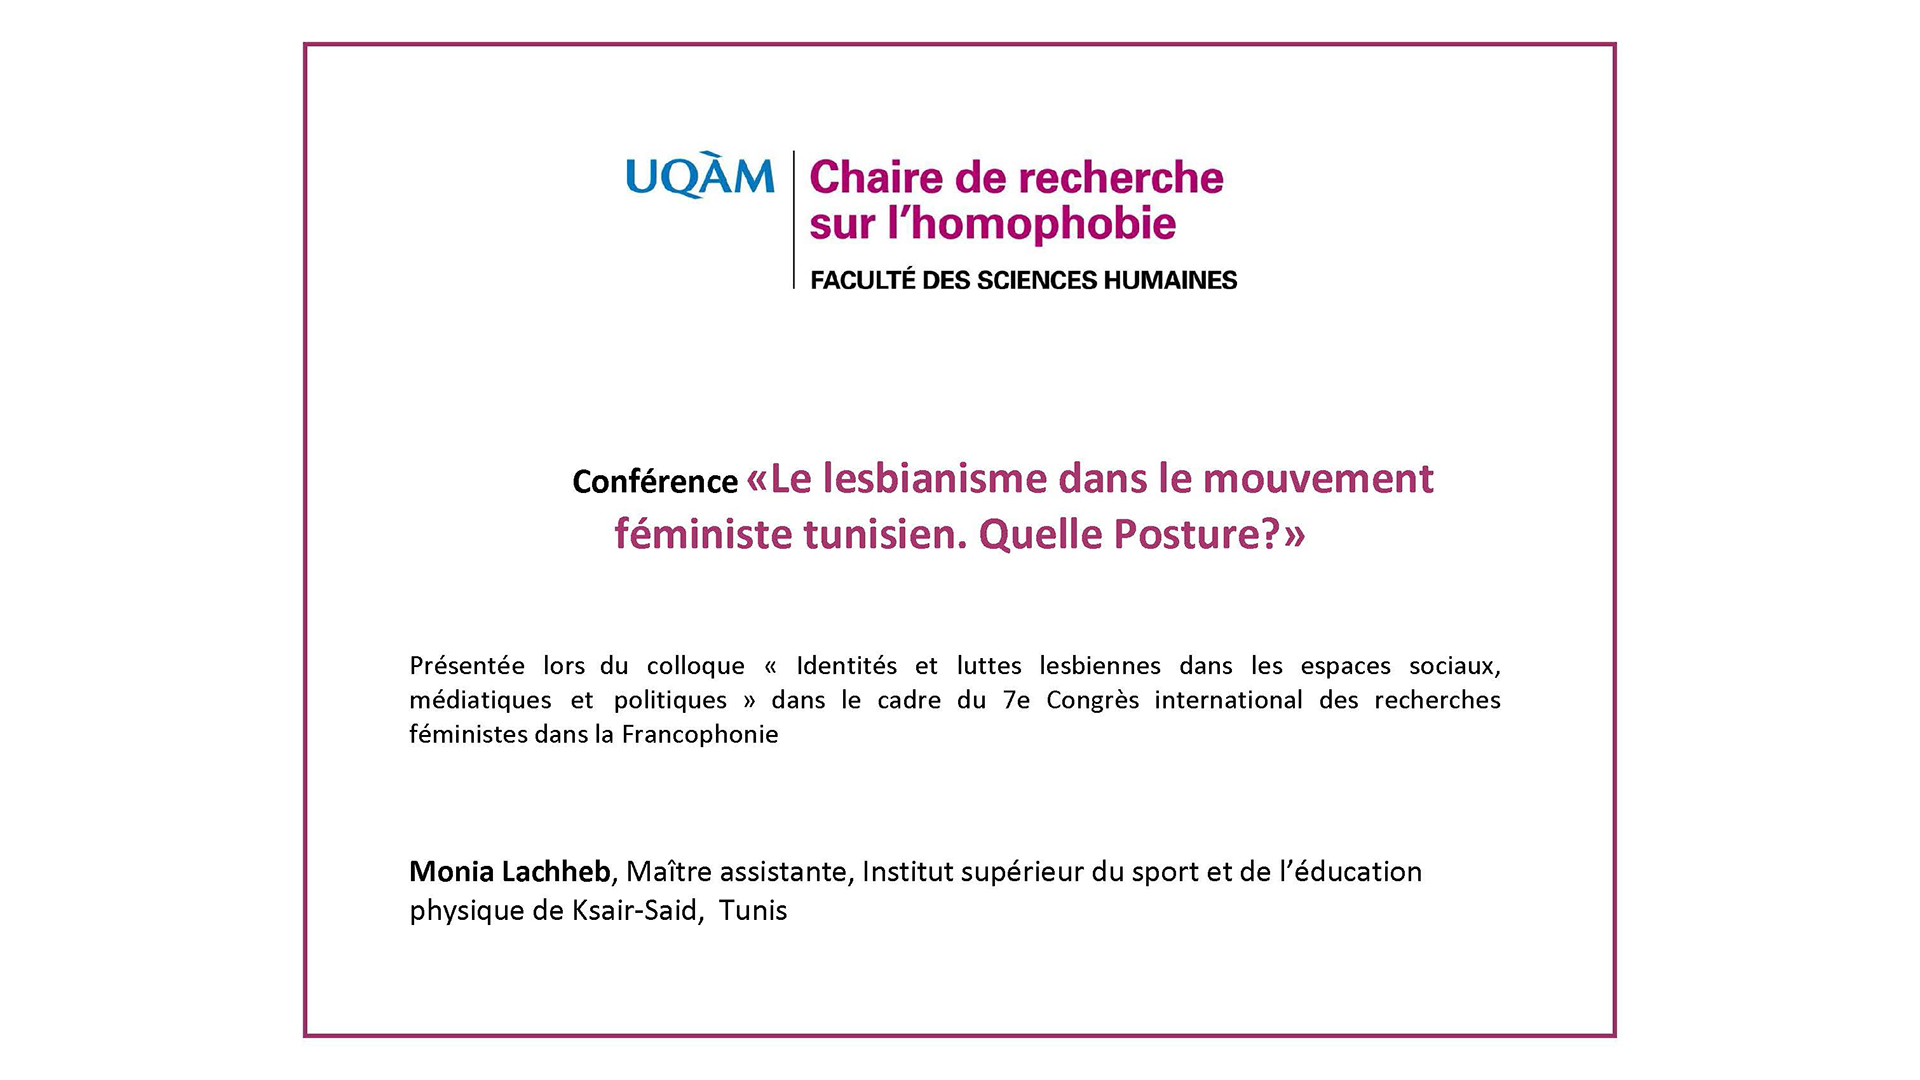 Conférence «Le lesbianisme dans le mouvement féministe tunisien. Quelle Posture?» (audio)